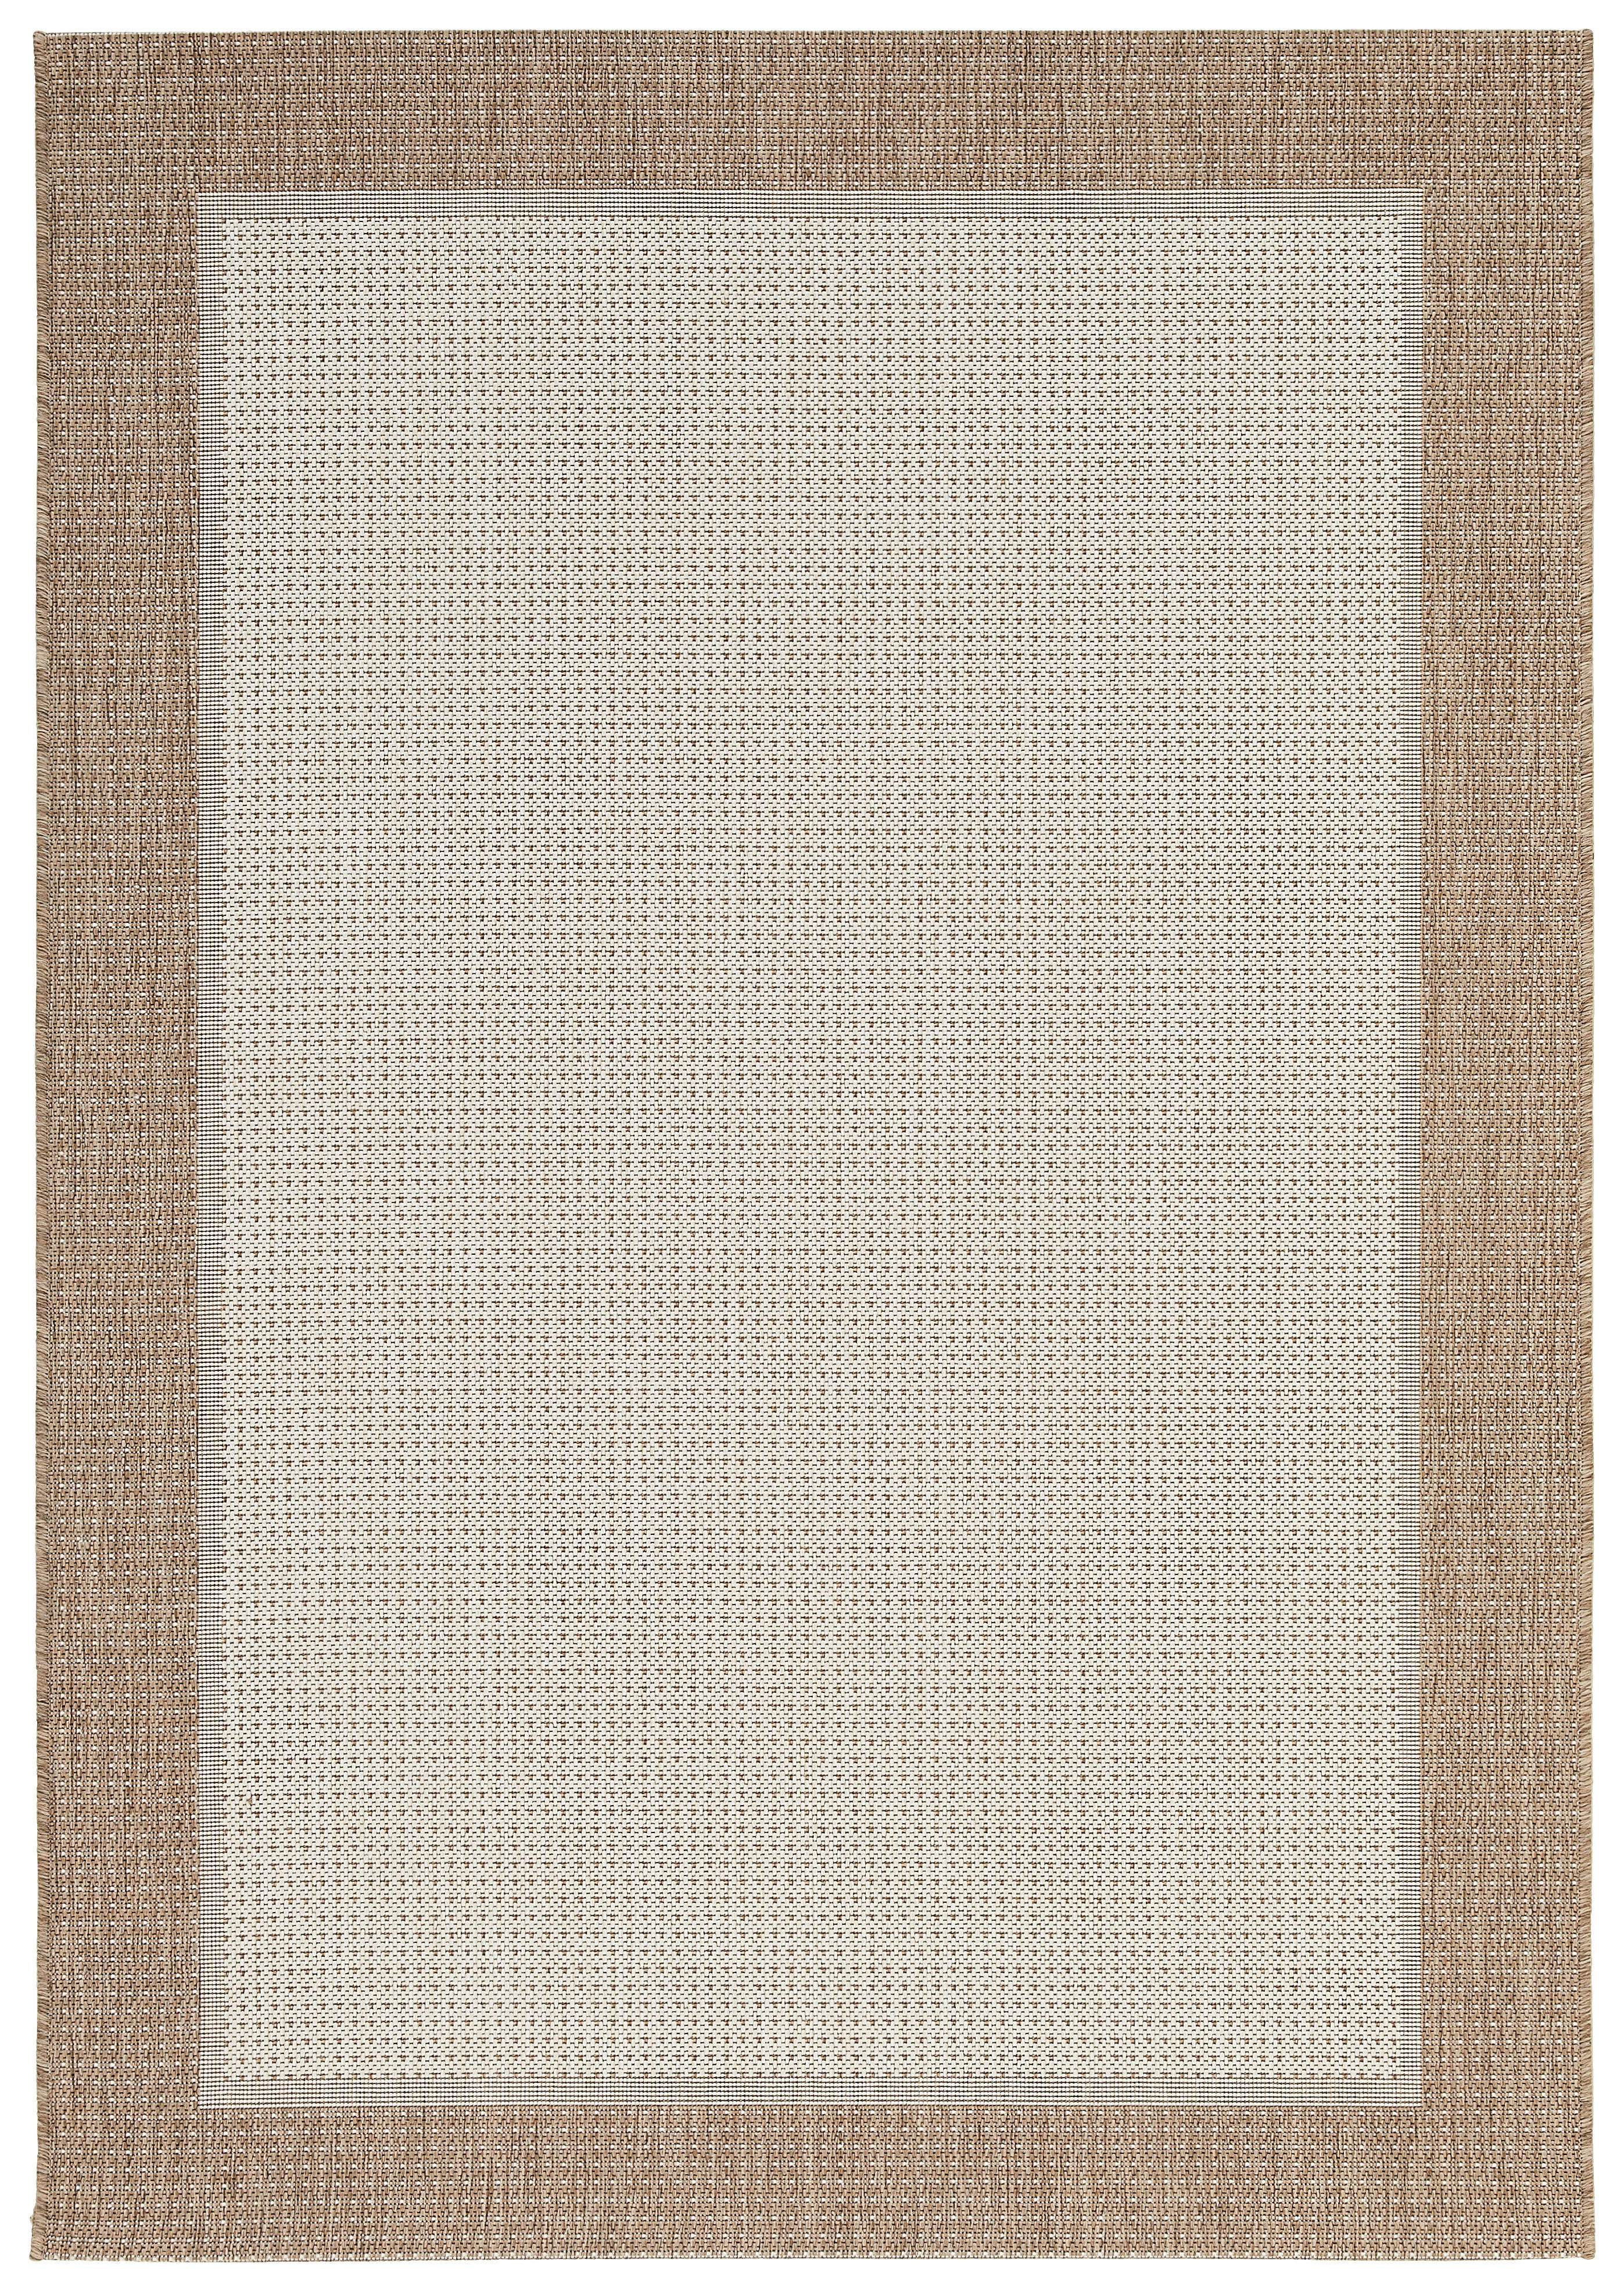 FLACHWEBETEPPICH 80/150 cm  - Beige, KONVENTIONELL, Textil (80/150cm) - Boxxx